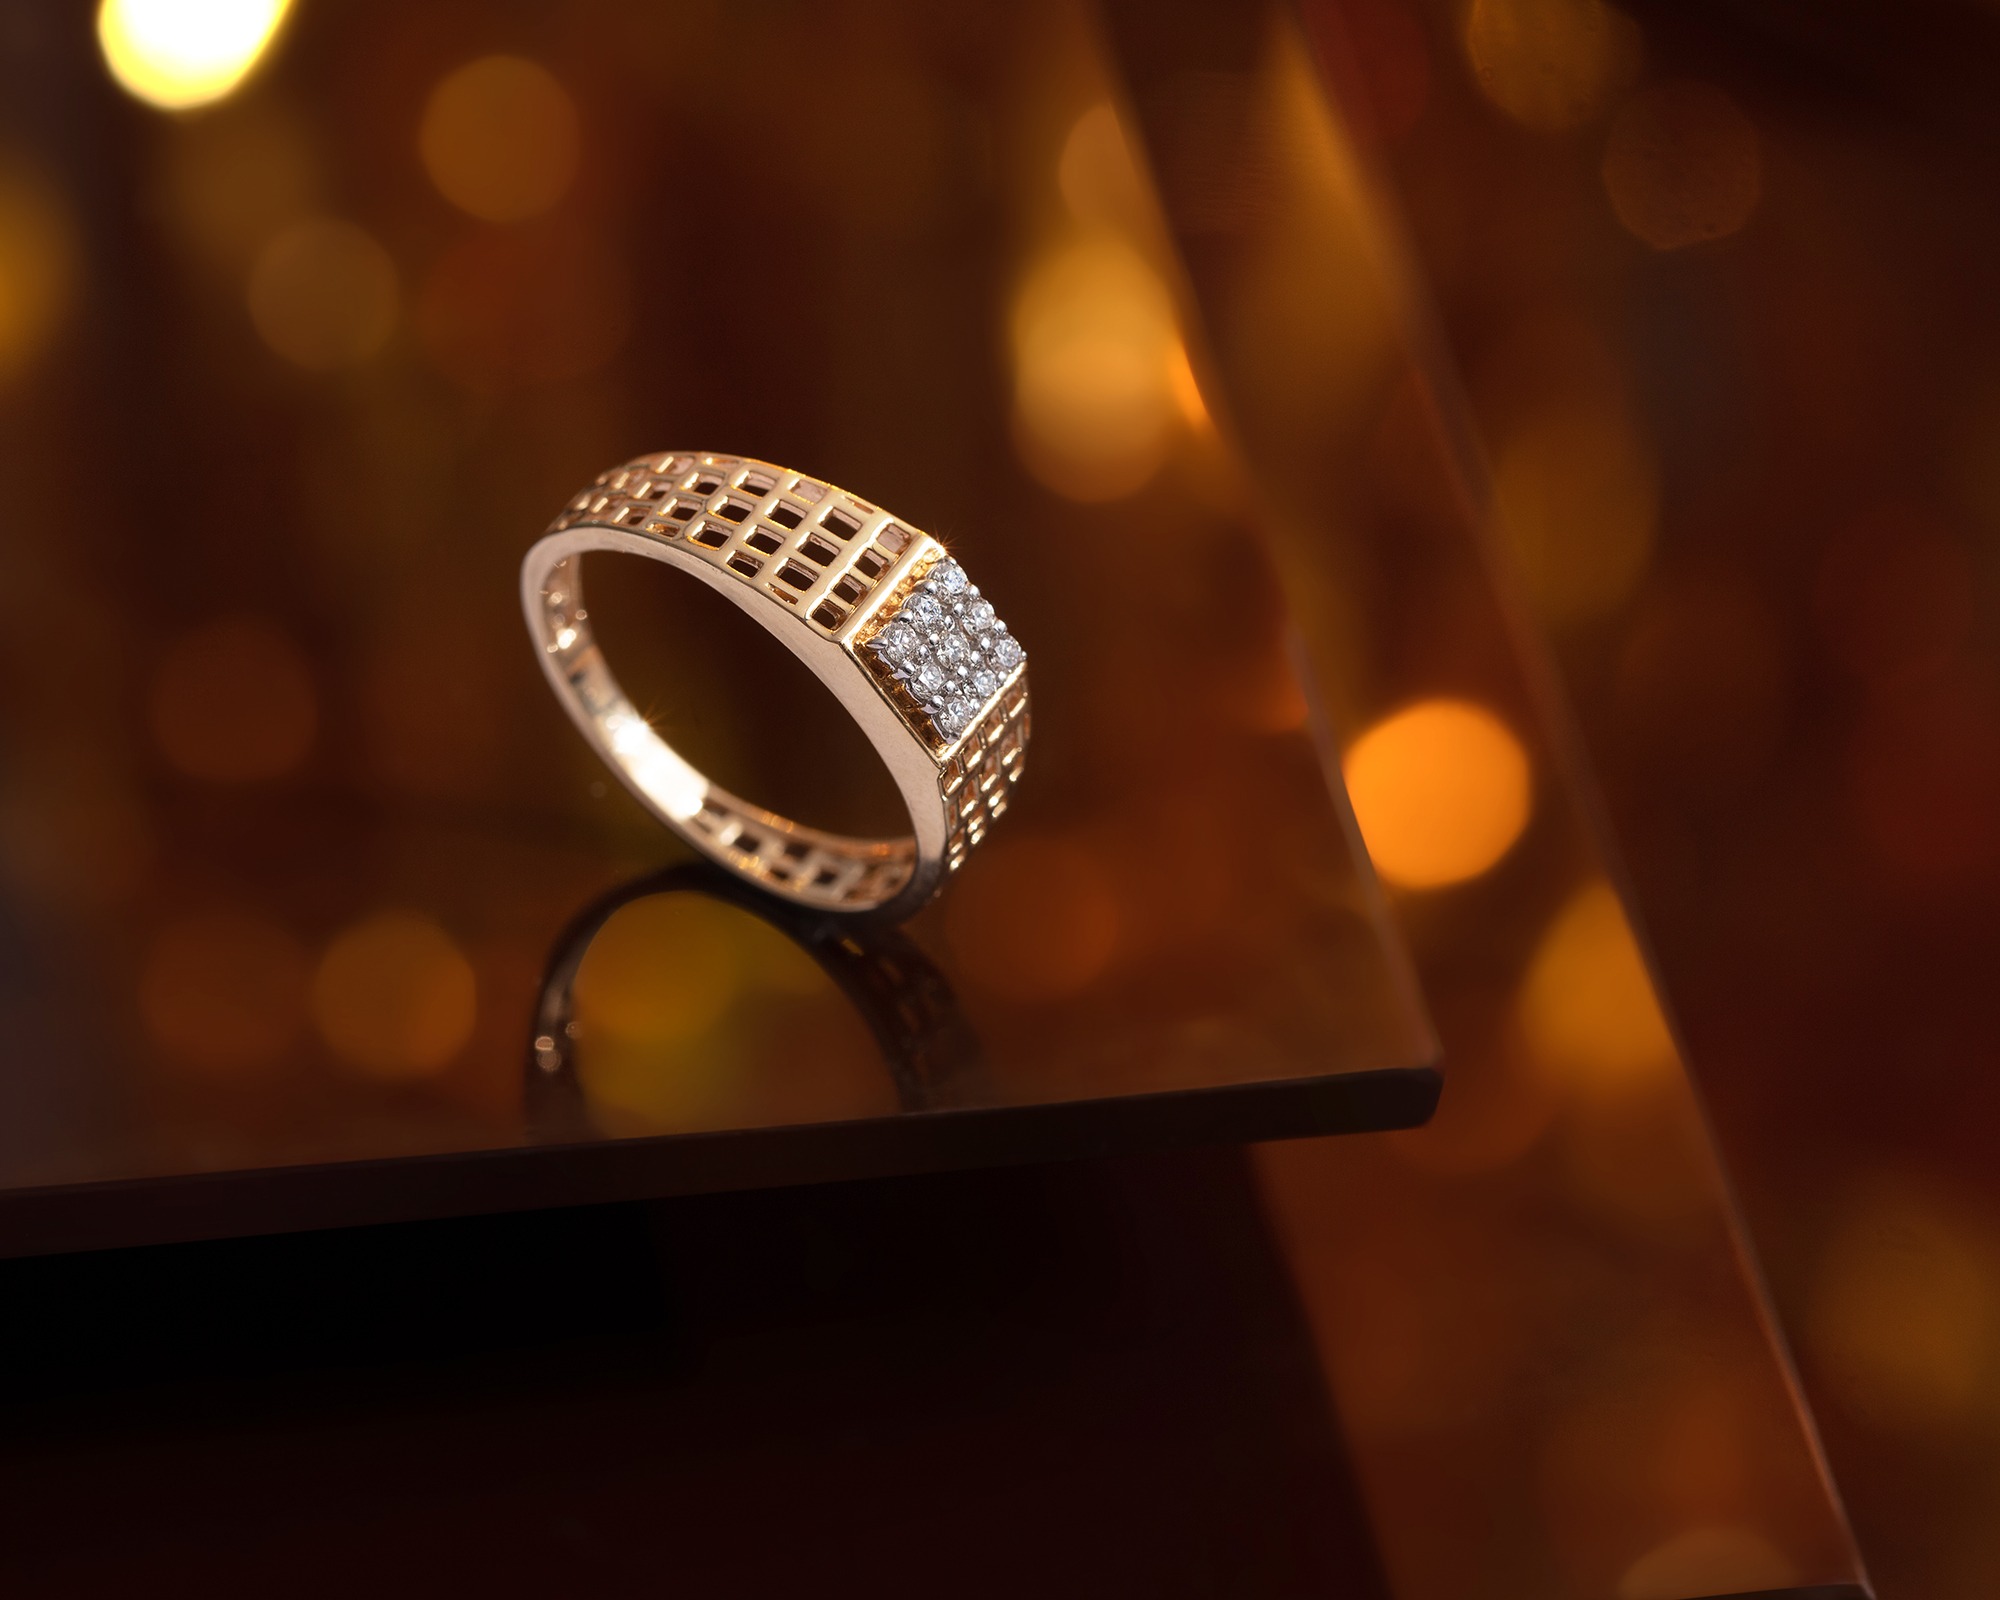 Diego Platinum Ring For Men Jewellery India Online - CaratLane.com